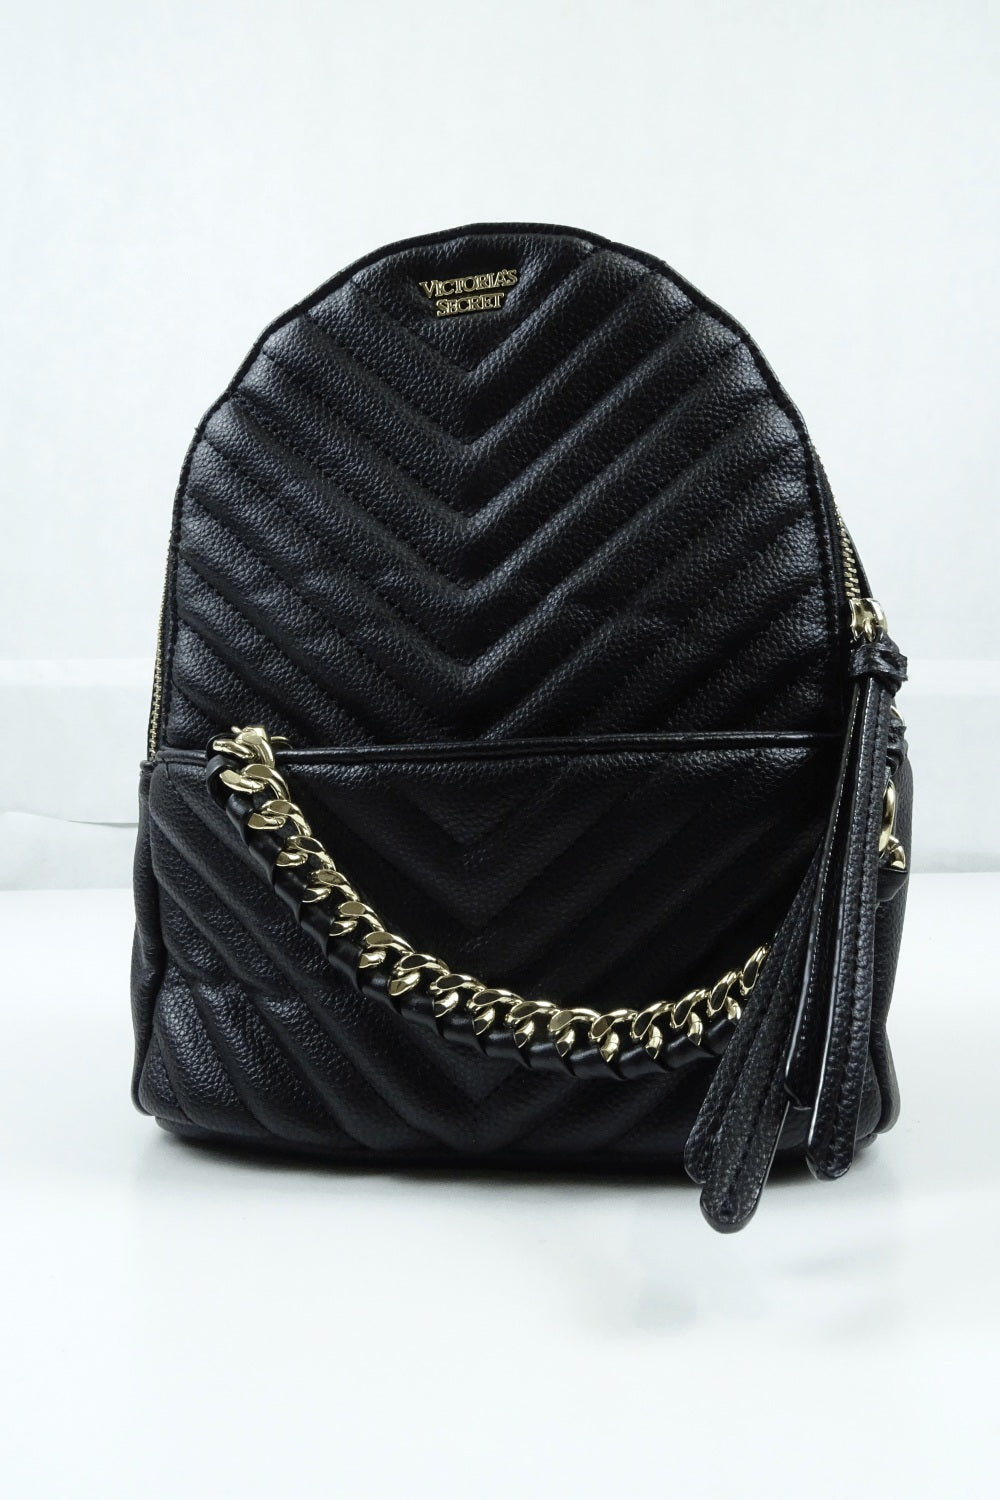 Victoria Secret Black and Gold Detailed Backpack